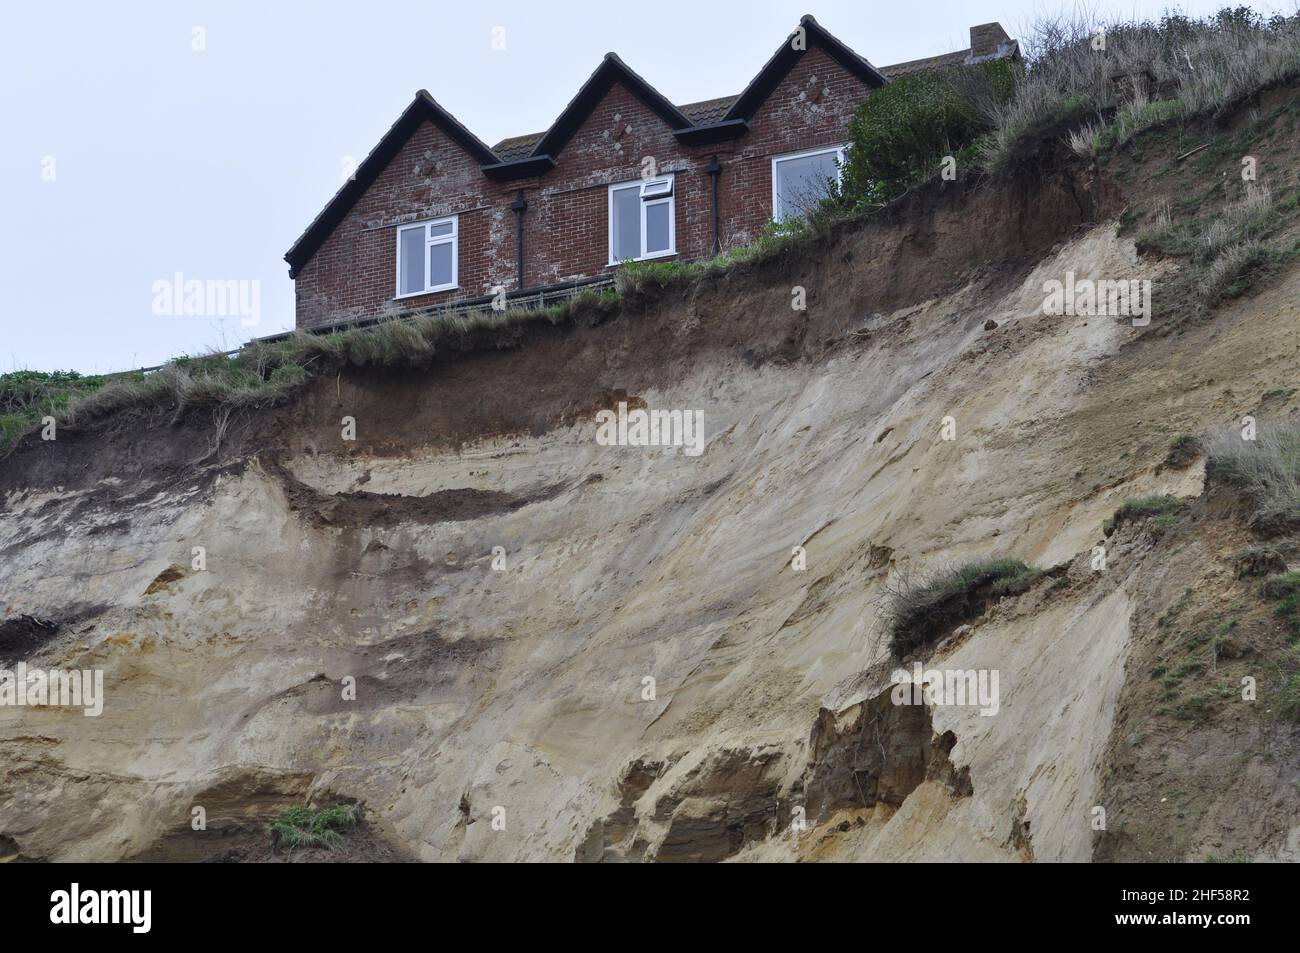 Landslip on Mundesley cliffs, north Norfolk, England, UK Stock Photo